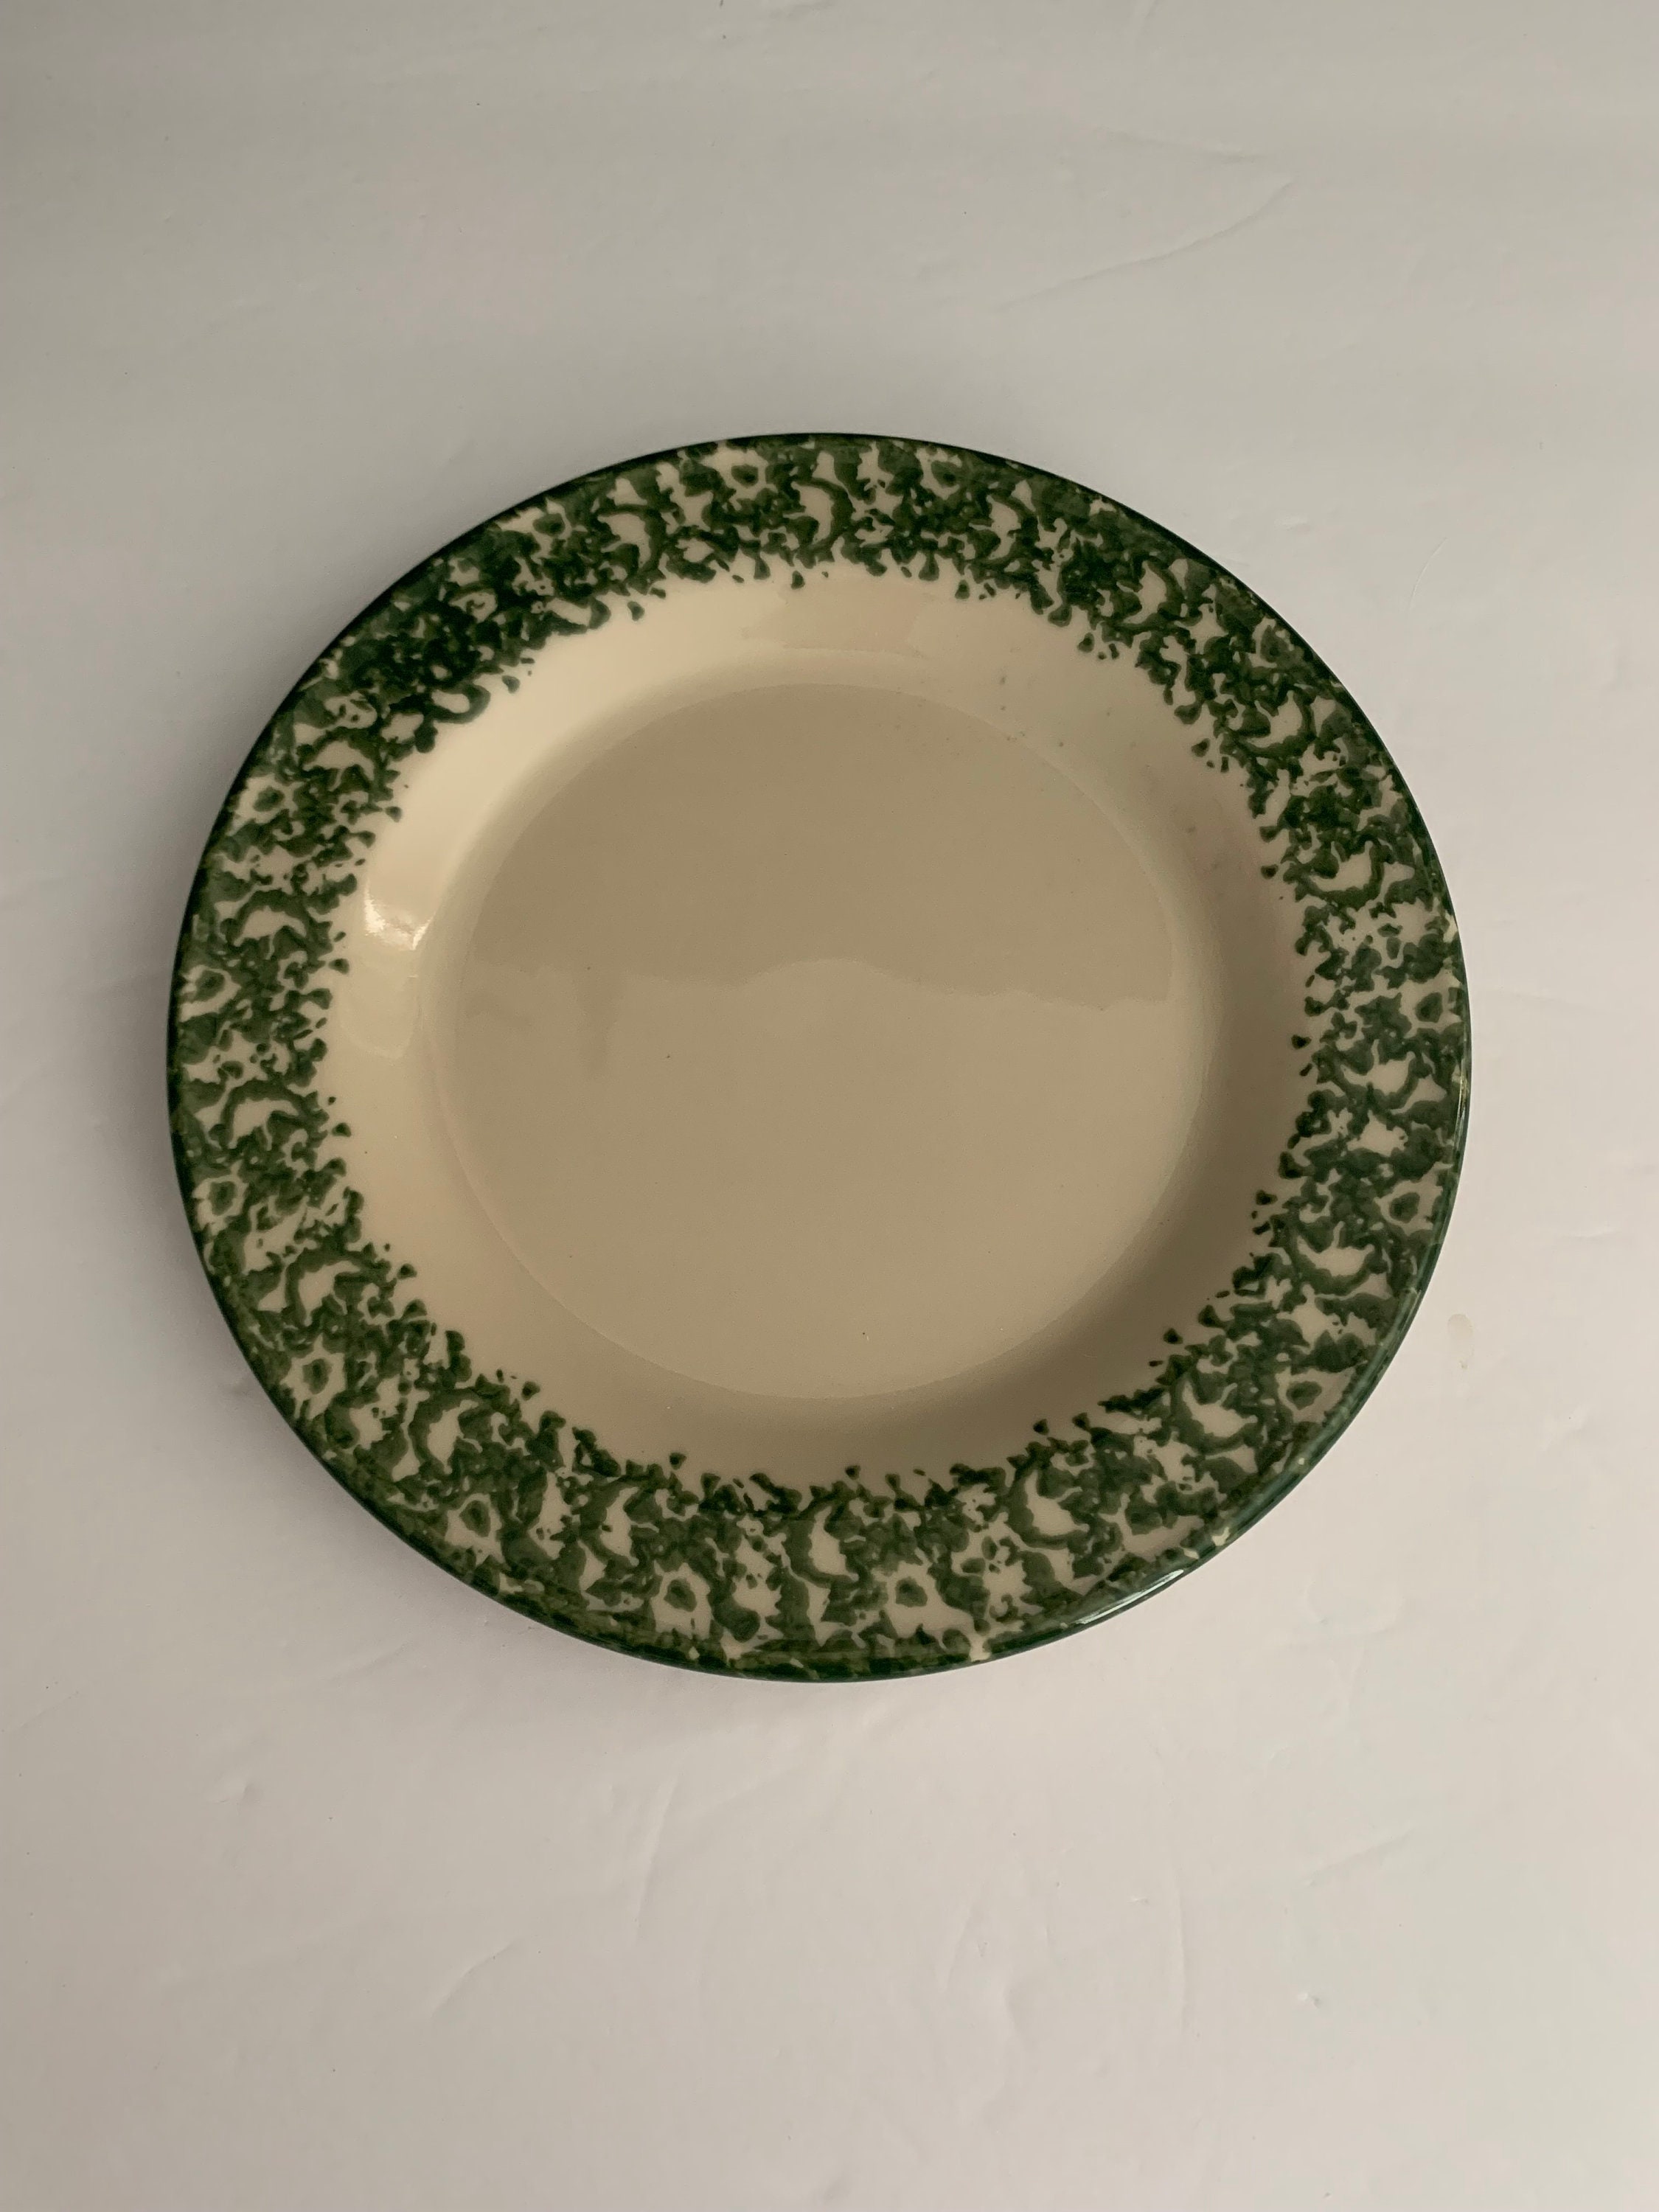 9 3/4 Roseville Ohio Sponge Paint Plate, Dinner Plate, Green